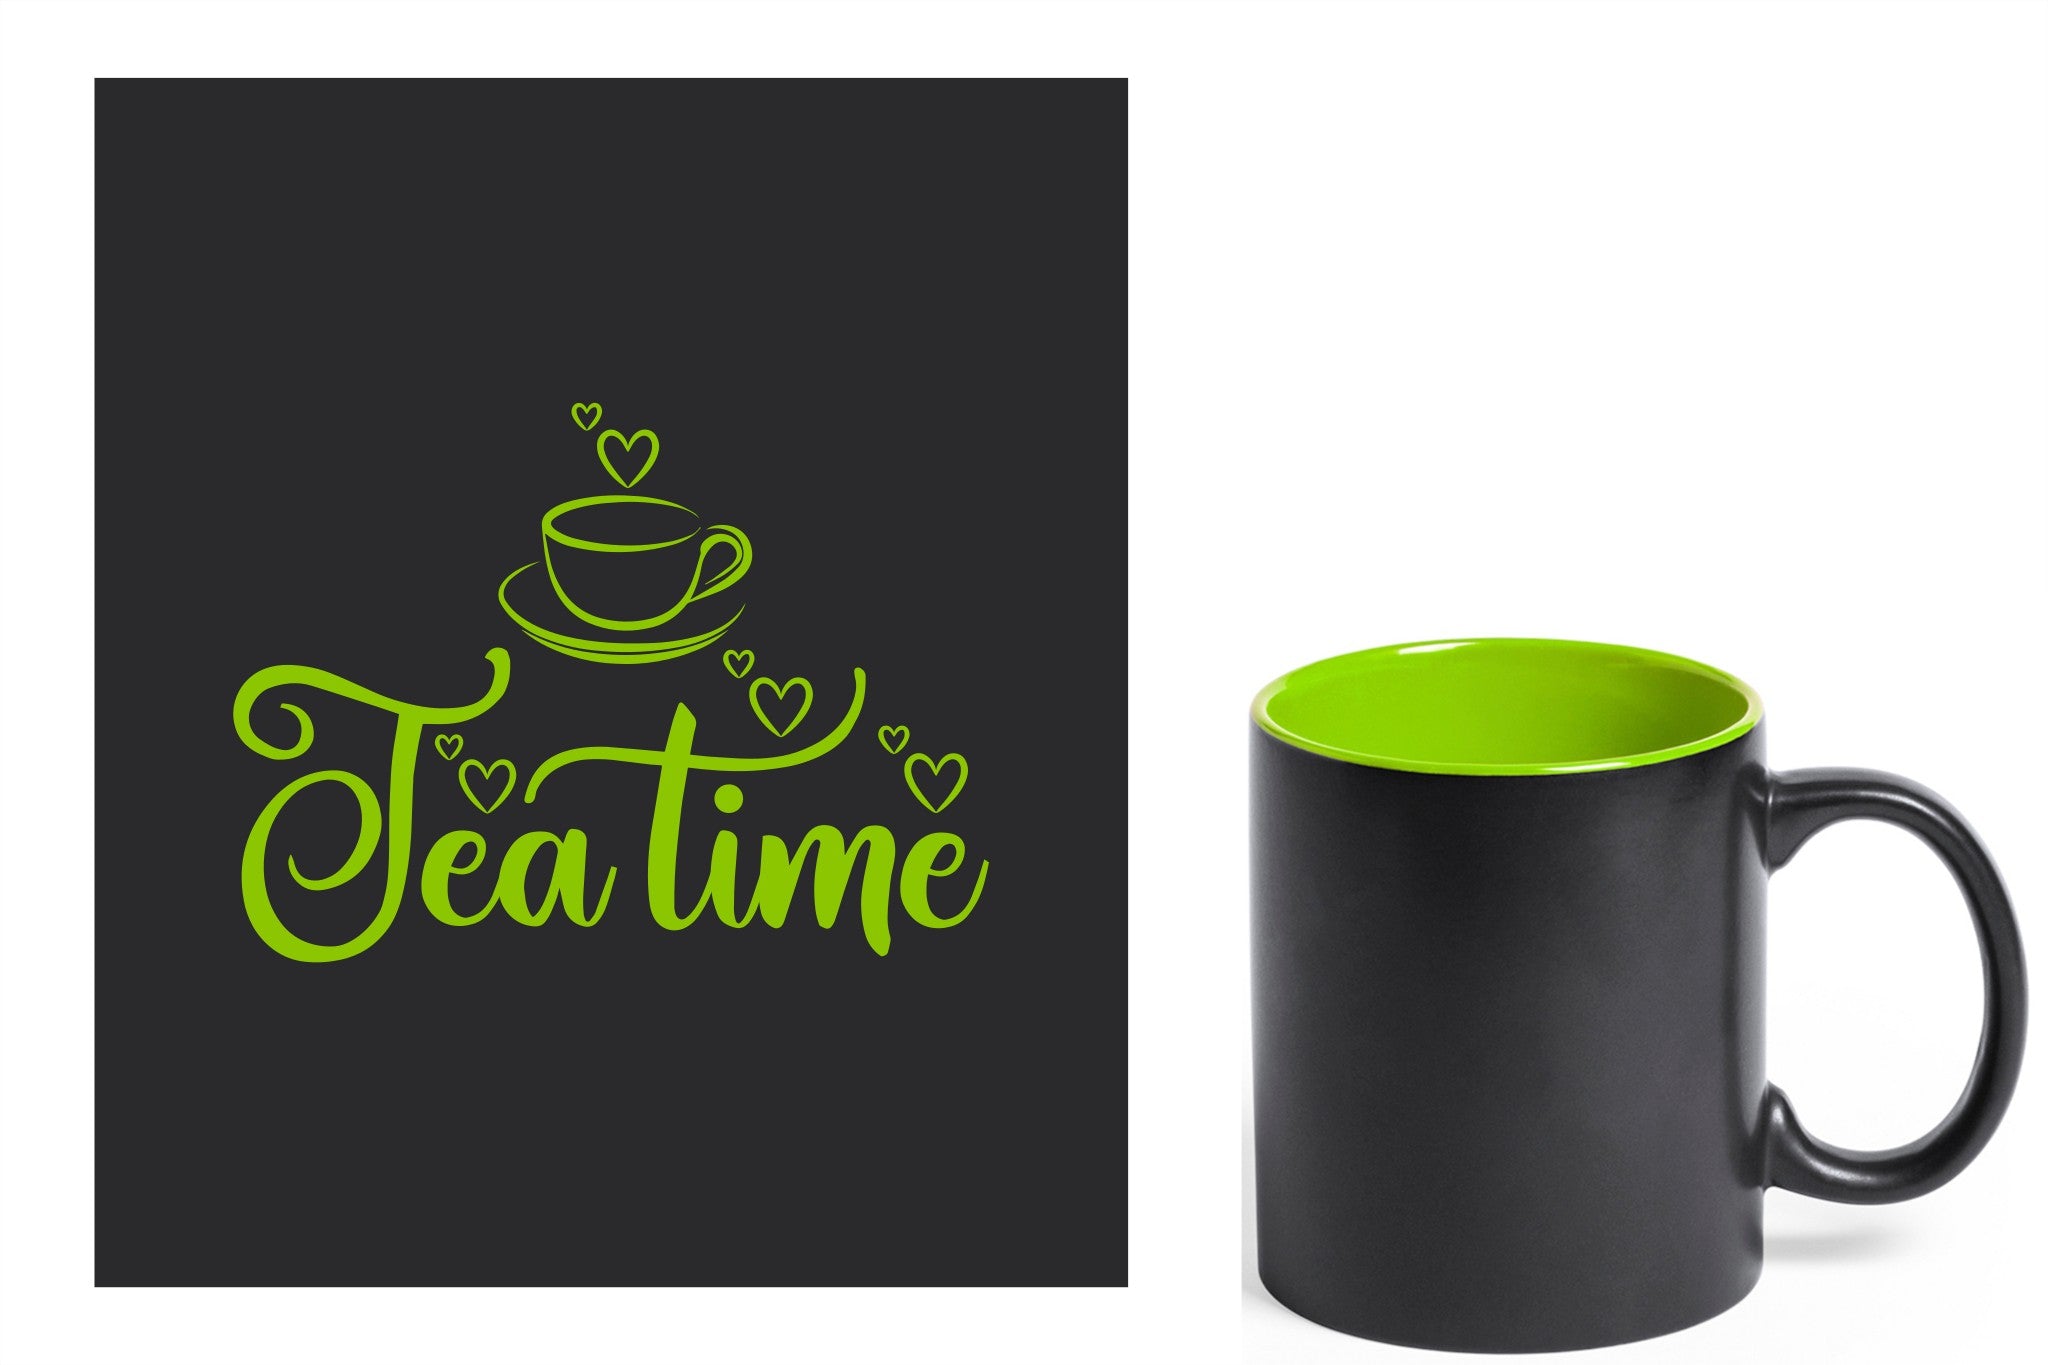 zwarte keramische mok met groene gravure  'tea time'.